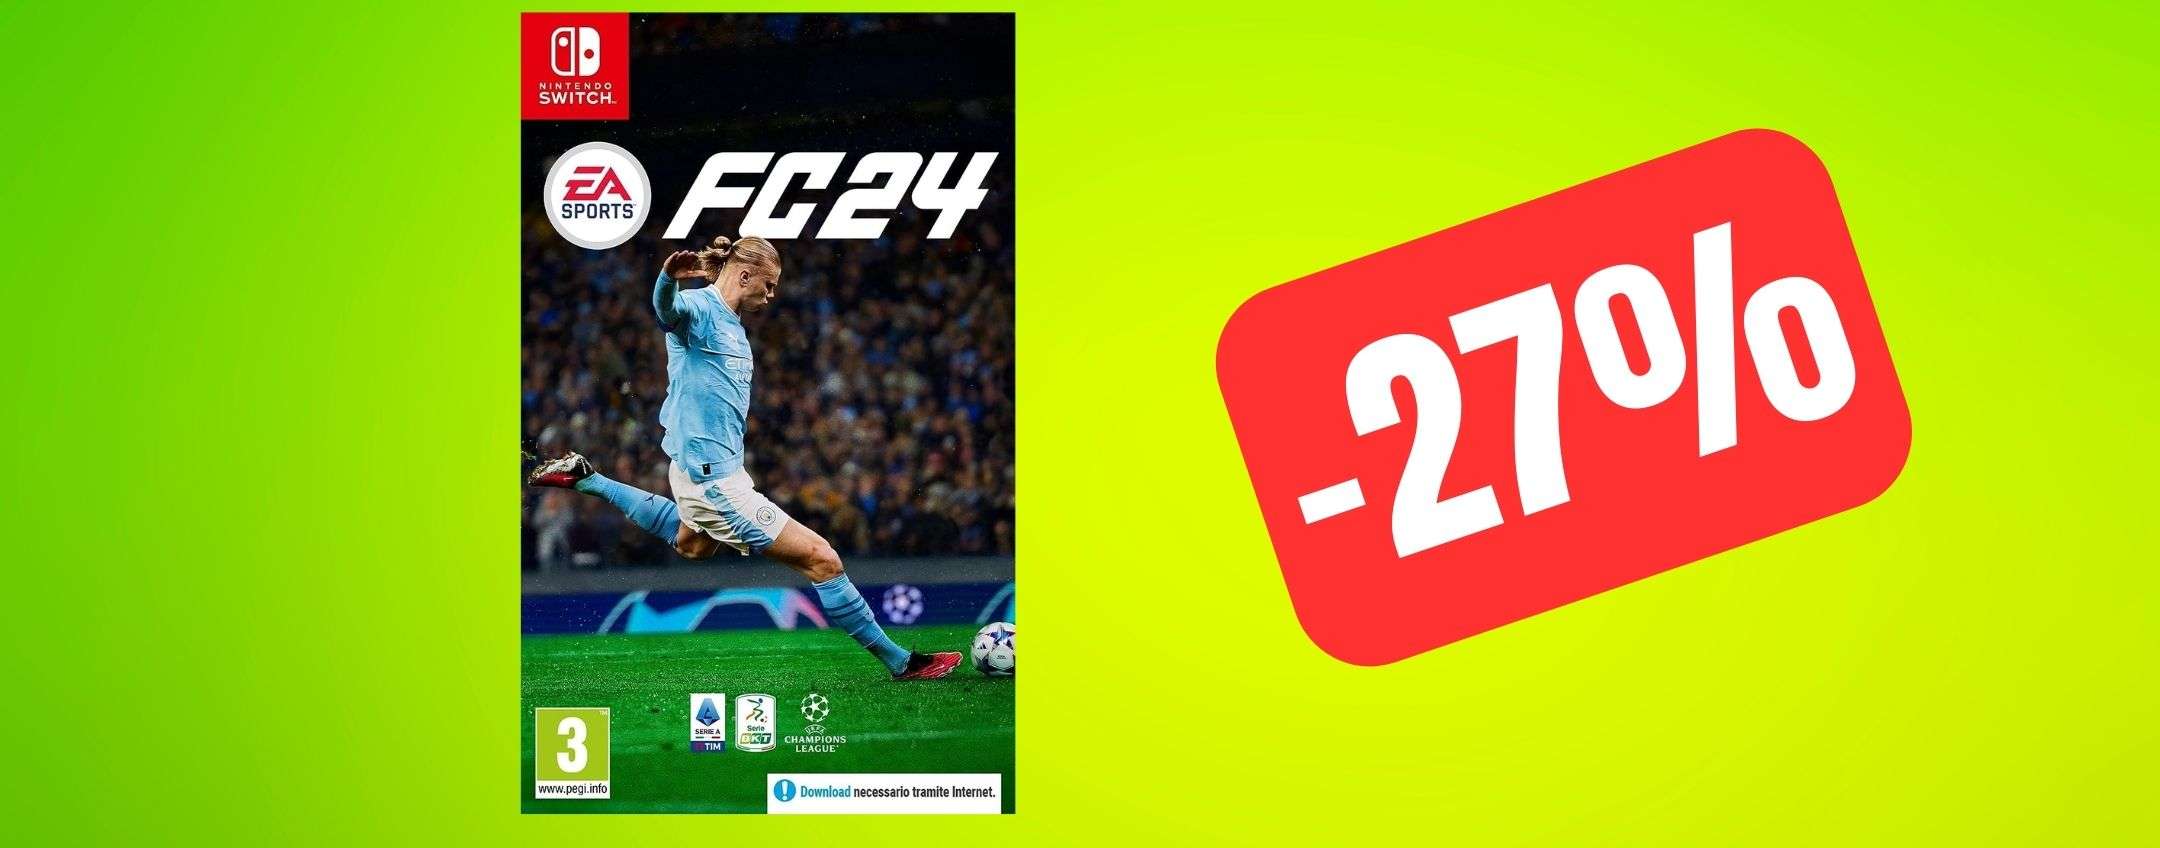 EA Sports FC 24 (FIFA 24) per Nintendo Switch è in OFFERTA su